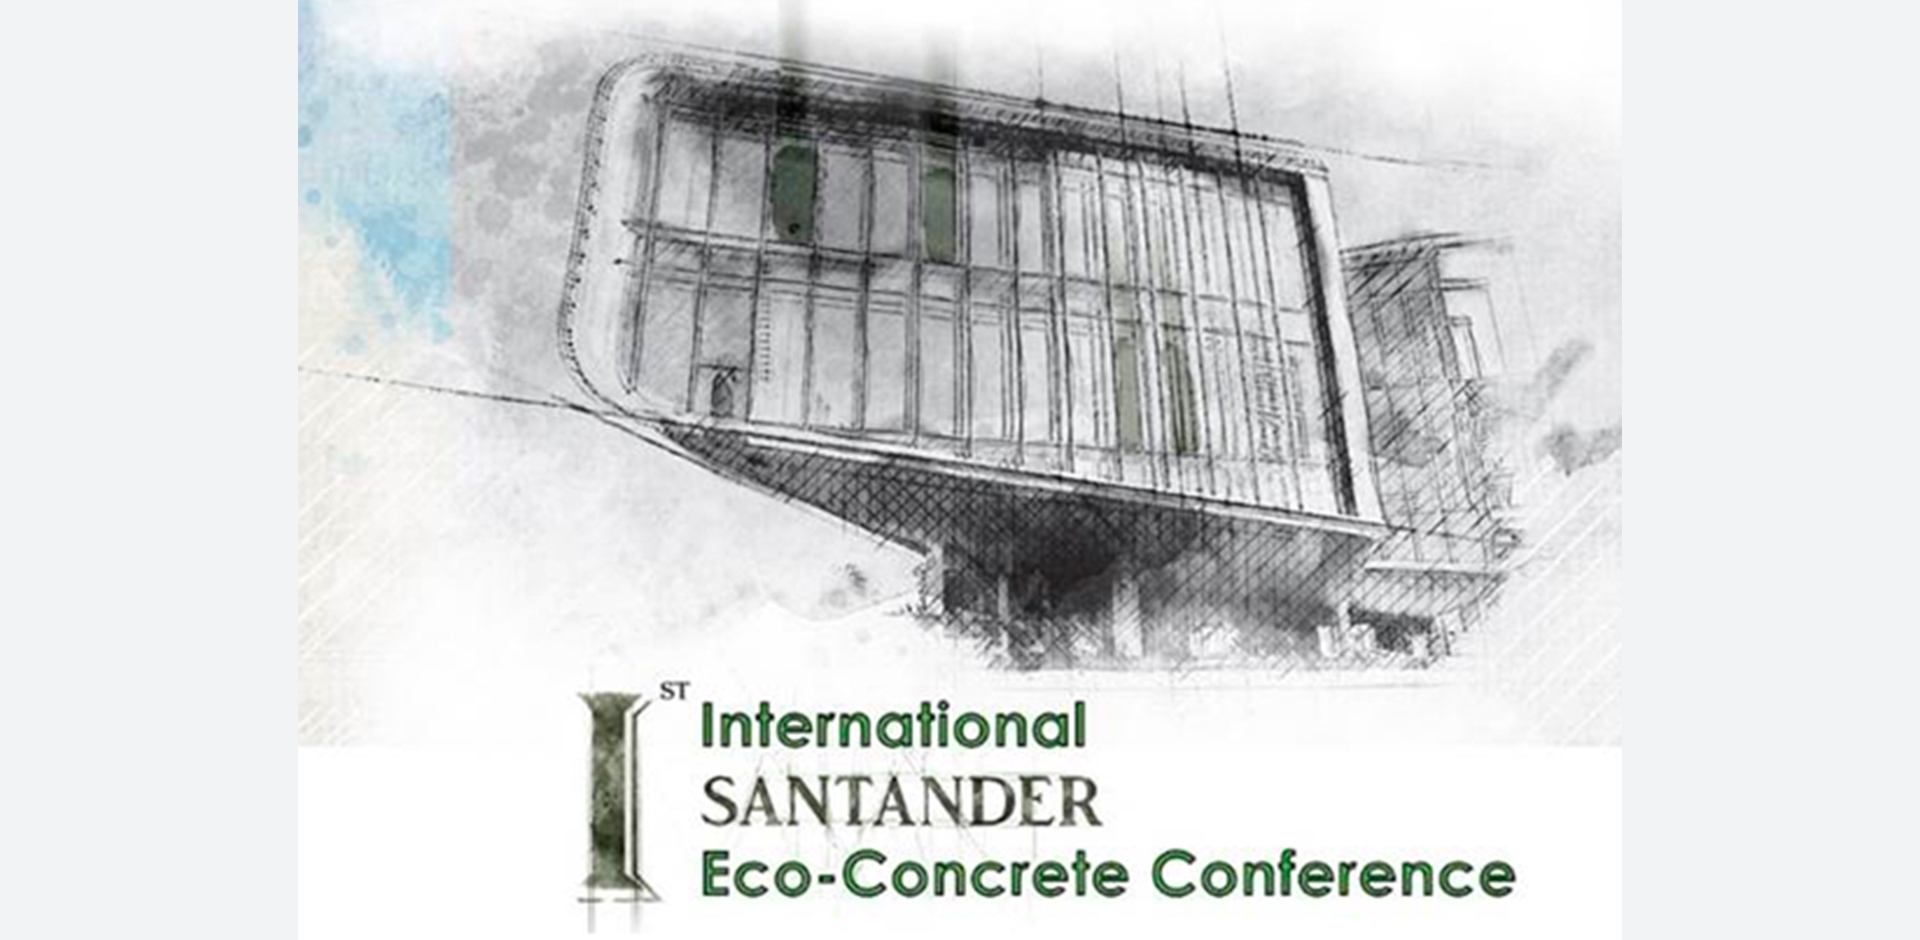 INGECID esponsoriza la primera edición de la Conferencia Internacional de Eco-Hormigón en Santander